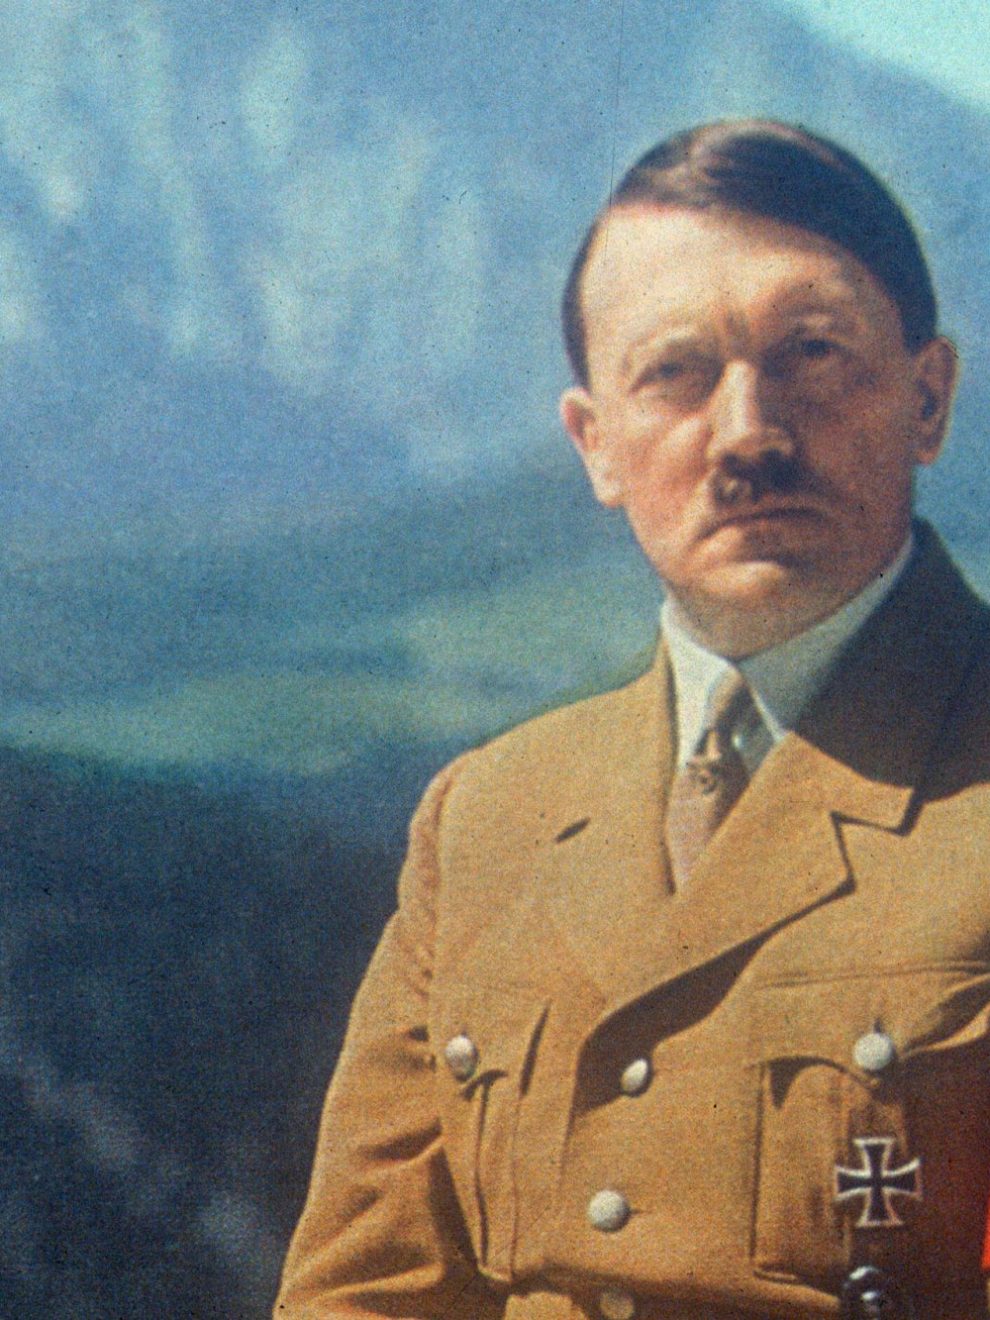 Evo kako je izgledalo biti paša nacističkog vođe Adolfa Hitlera